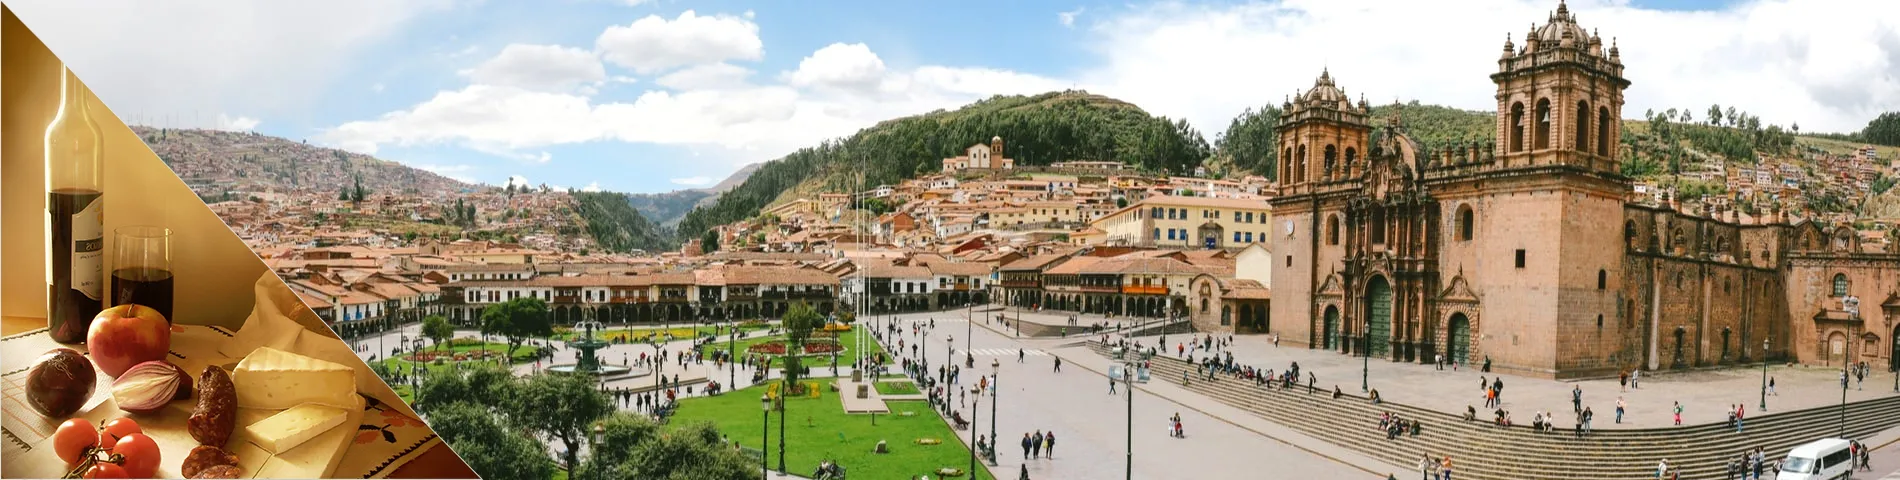 Cuzco - Espanhol & Cultura 